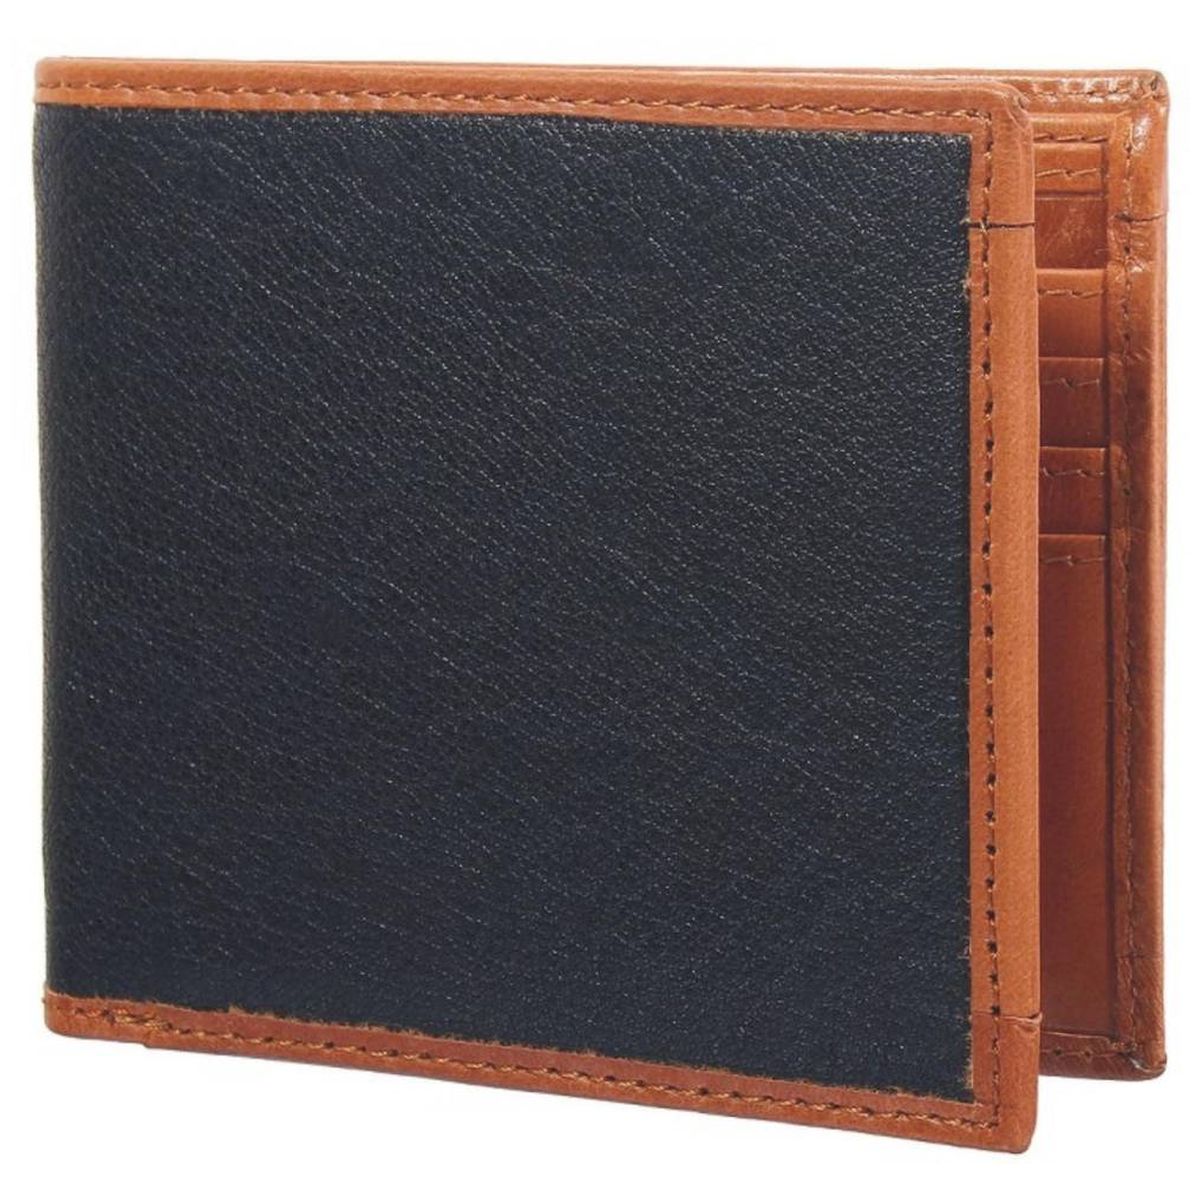 Debonair International Men Genuine Leather 8 Slots Wallet, DI934529, Brown